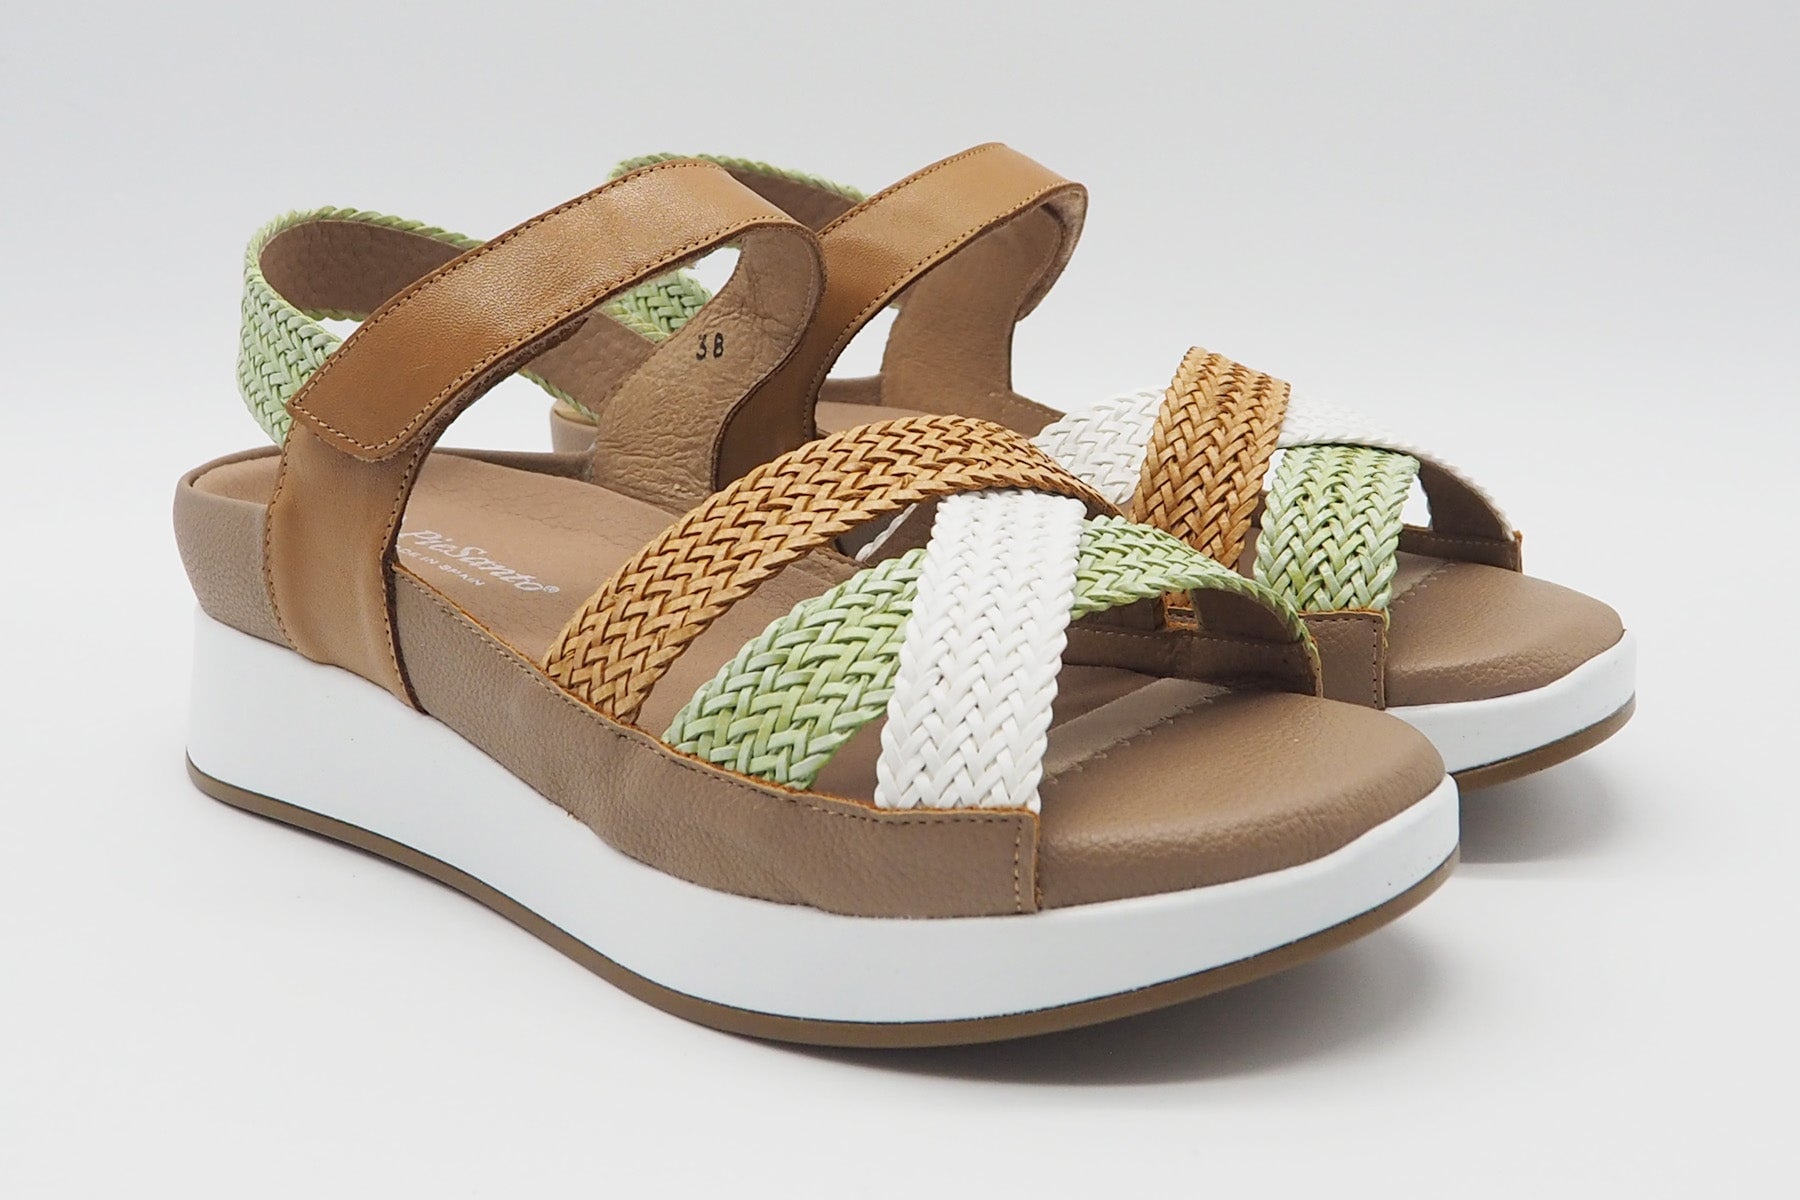 Damen Sandale aus geflochtenem Leder in Natur, Mint & Weiß - Absatz 2,5cm Damen Sandalen PieSanto 